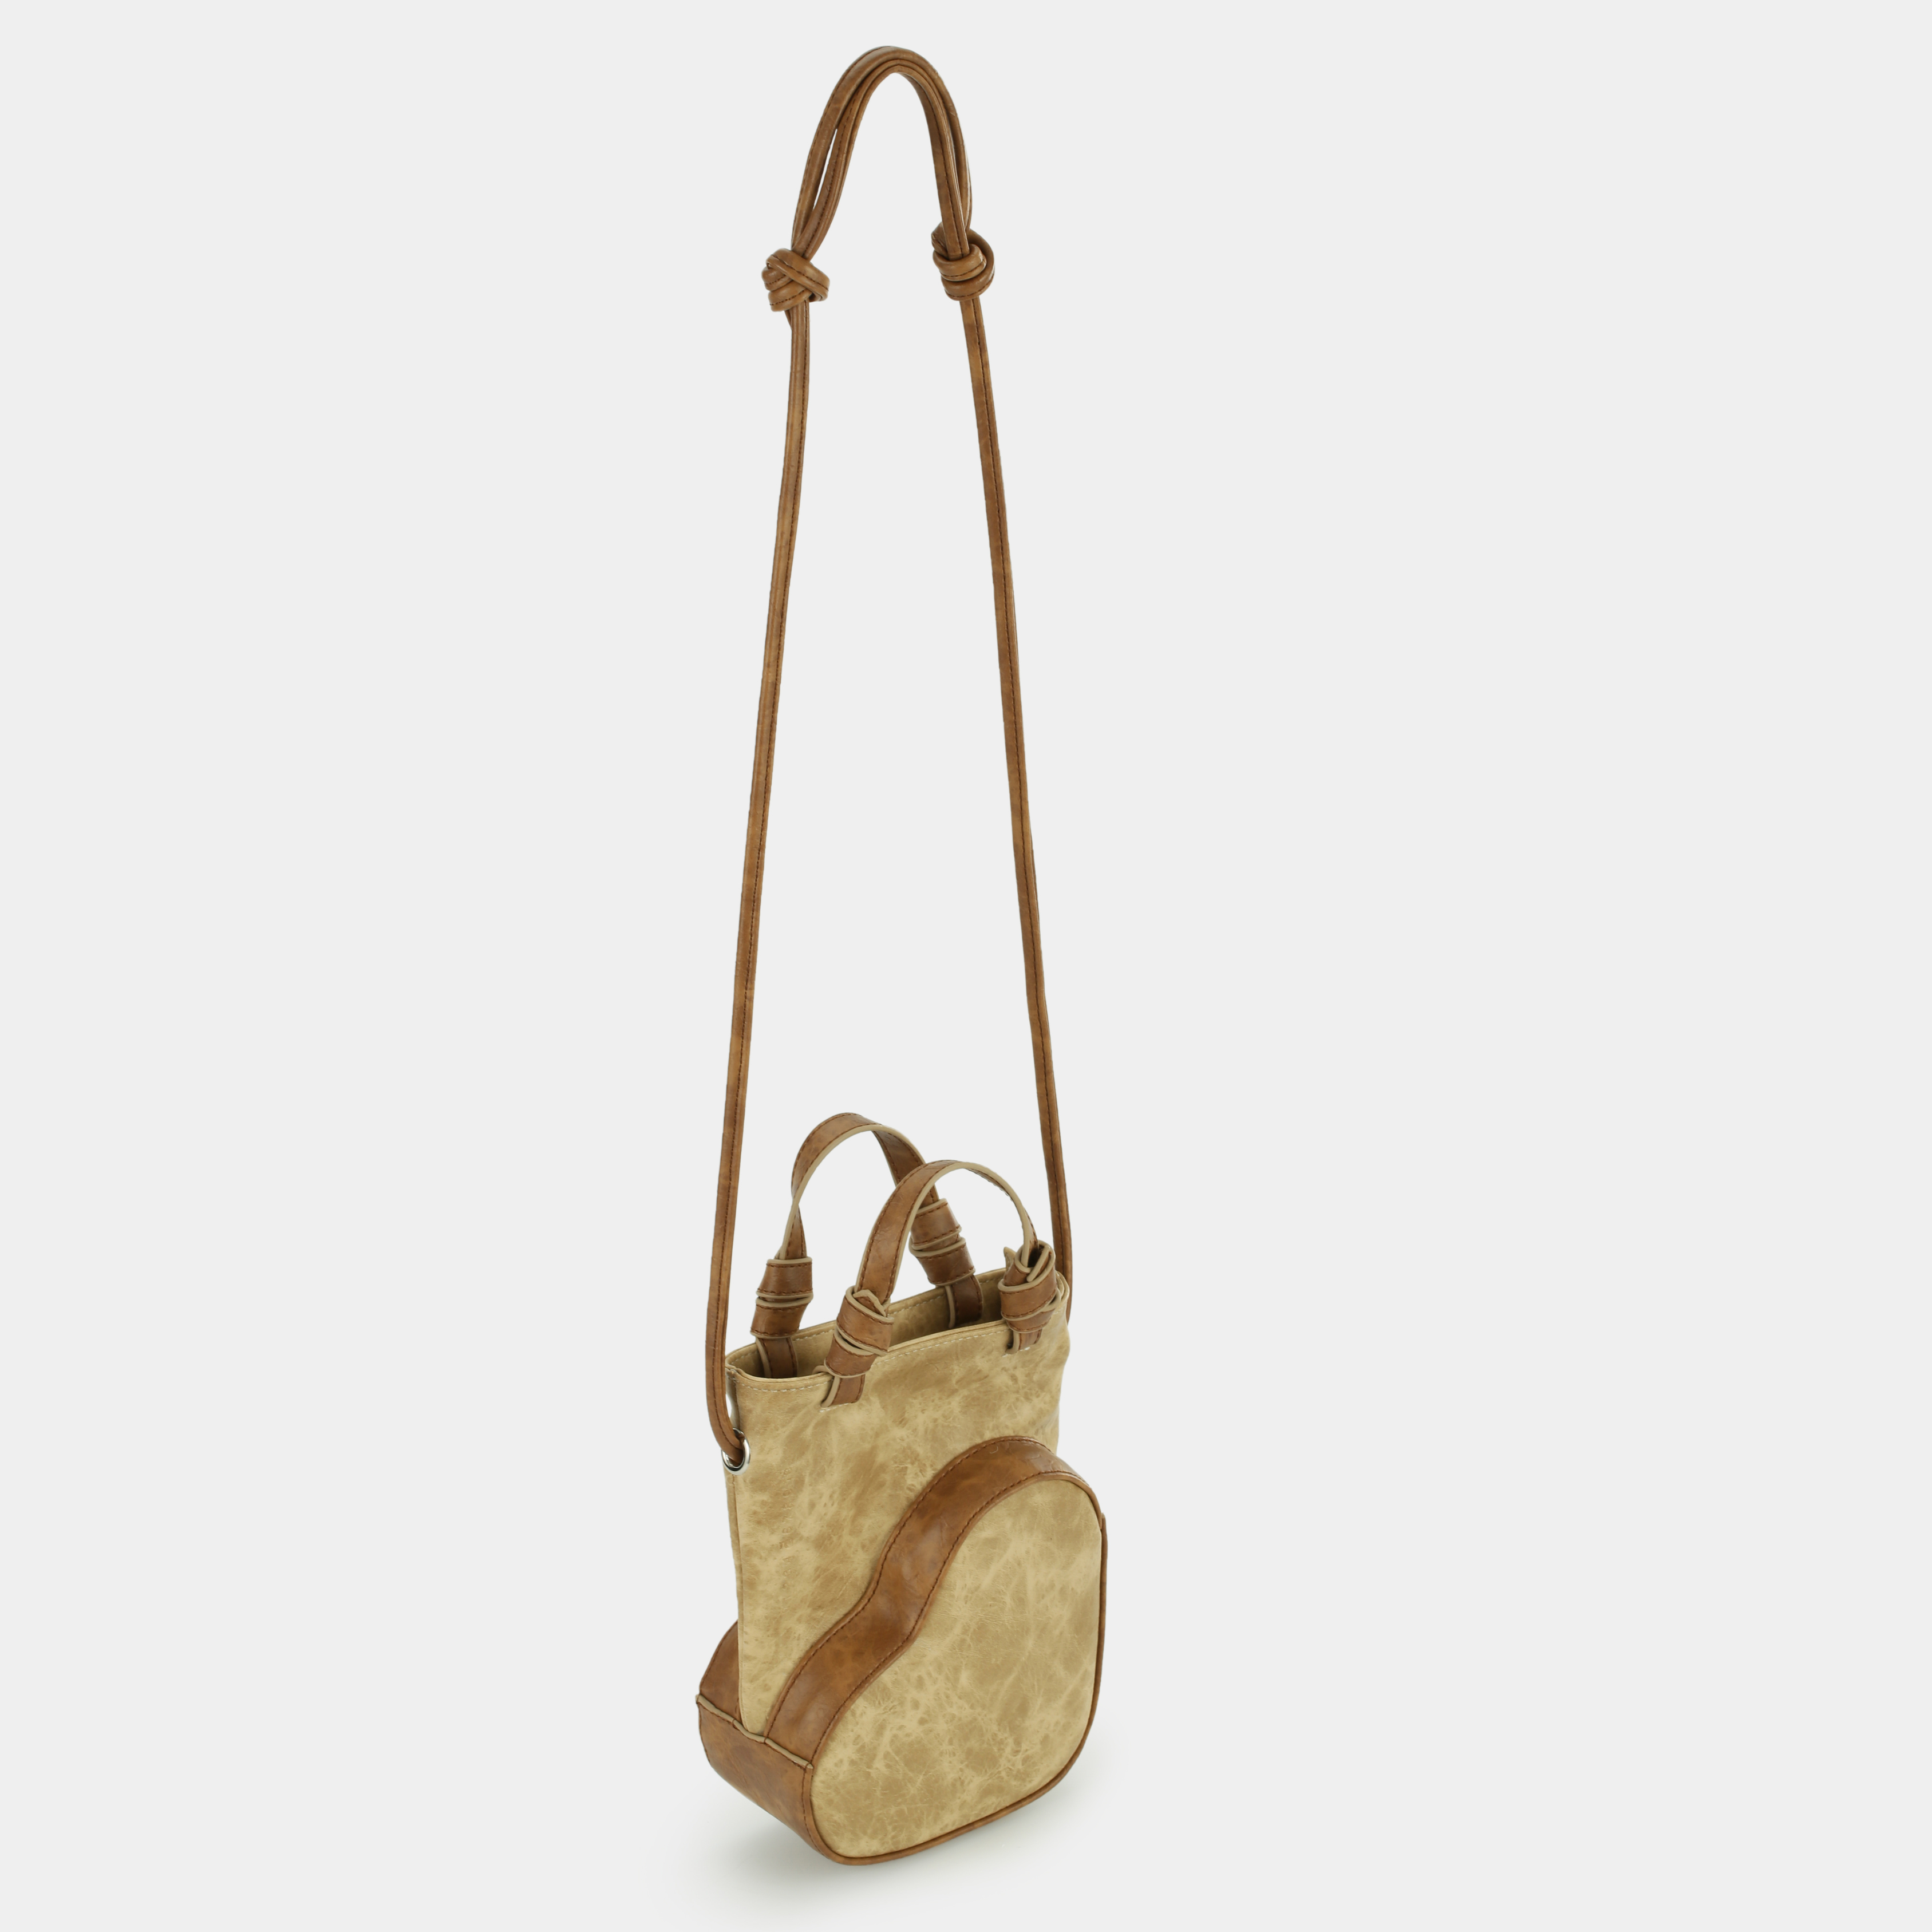 Growing Heart handbag in beige x brown color